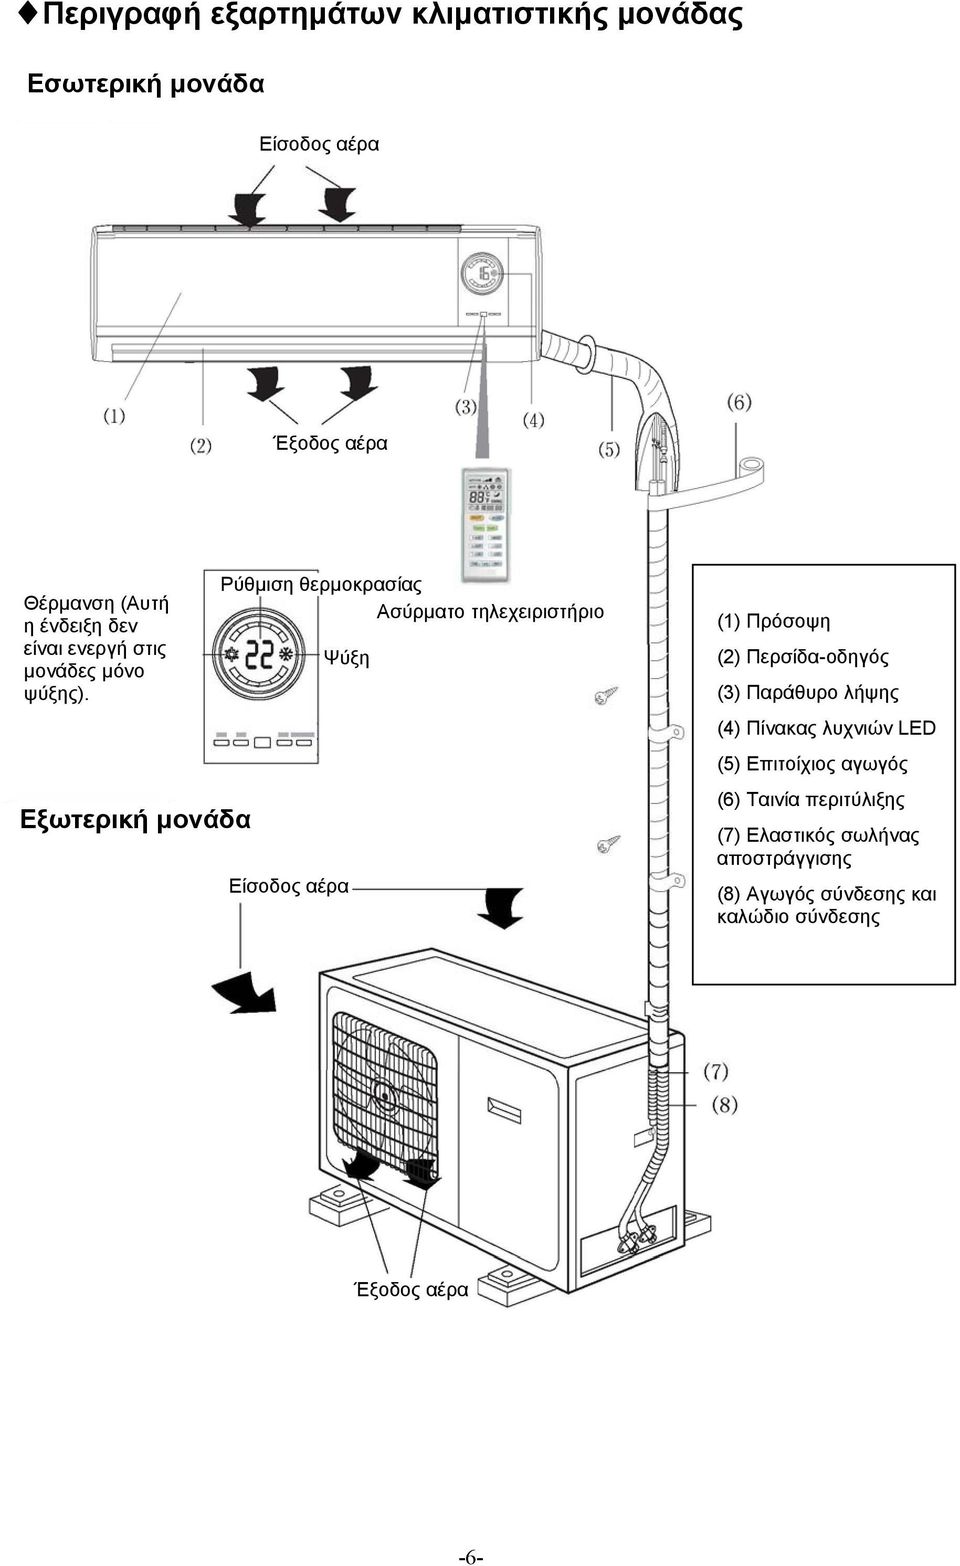 Εξωτερική μονάδα Ρύθμιση θερμοκρασίας Ασύρματο τηλεχειριστήριο Ψύξη Είσοδος αέρα (1) Πρόσοψη (2) Περσίδα-οδηγός